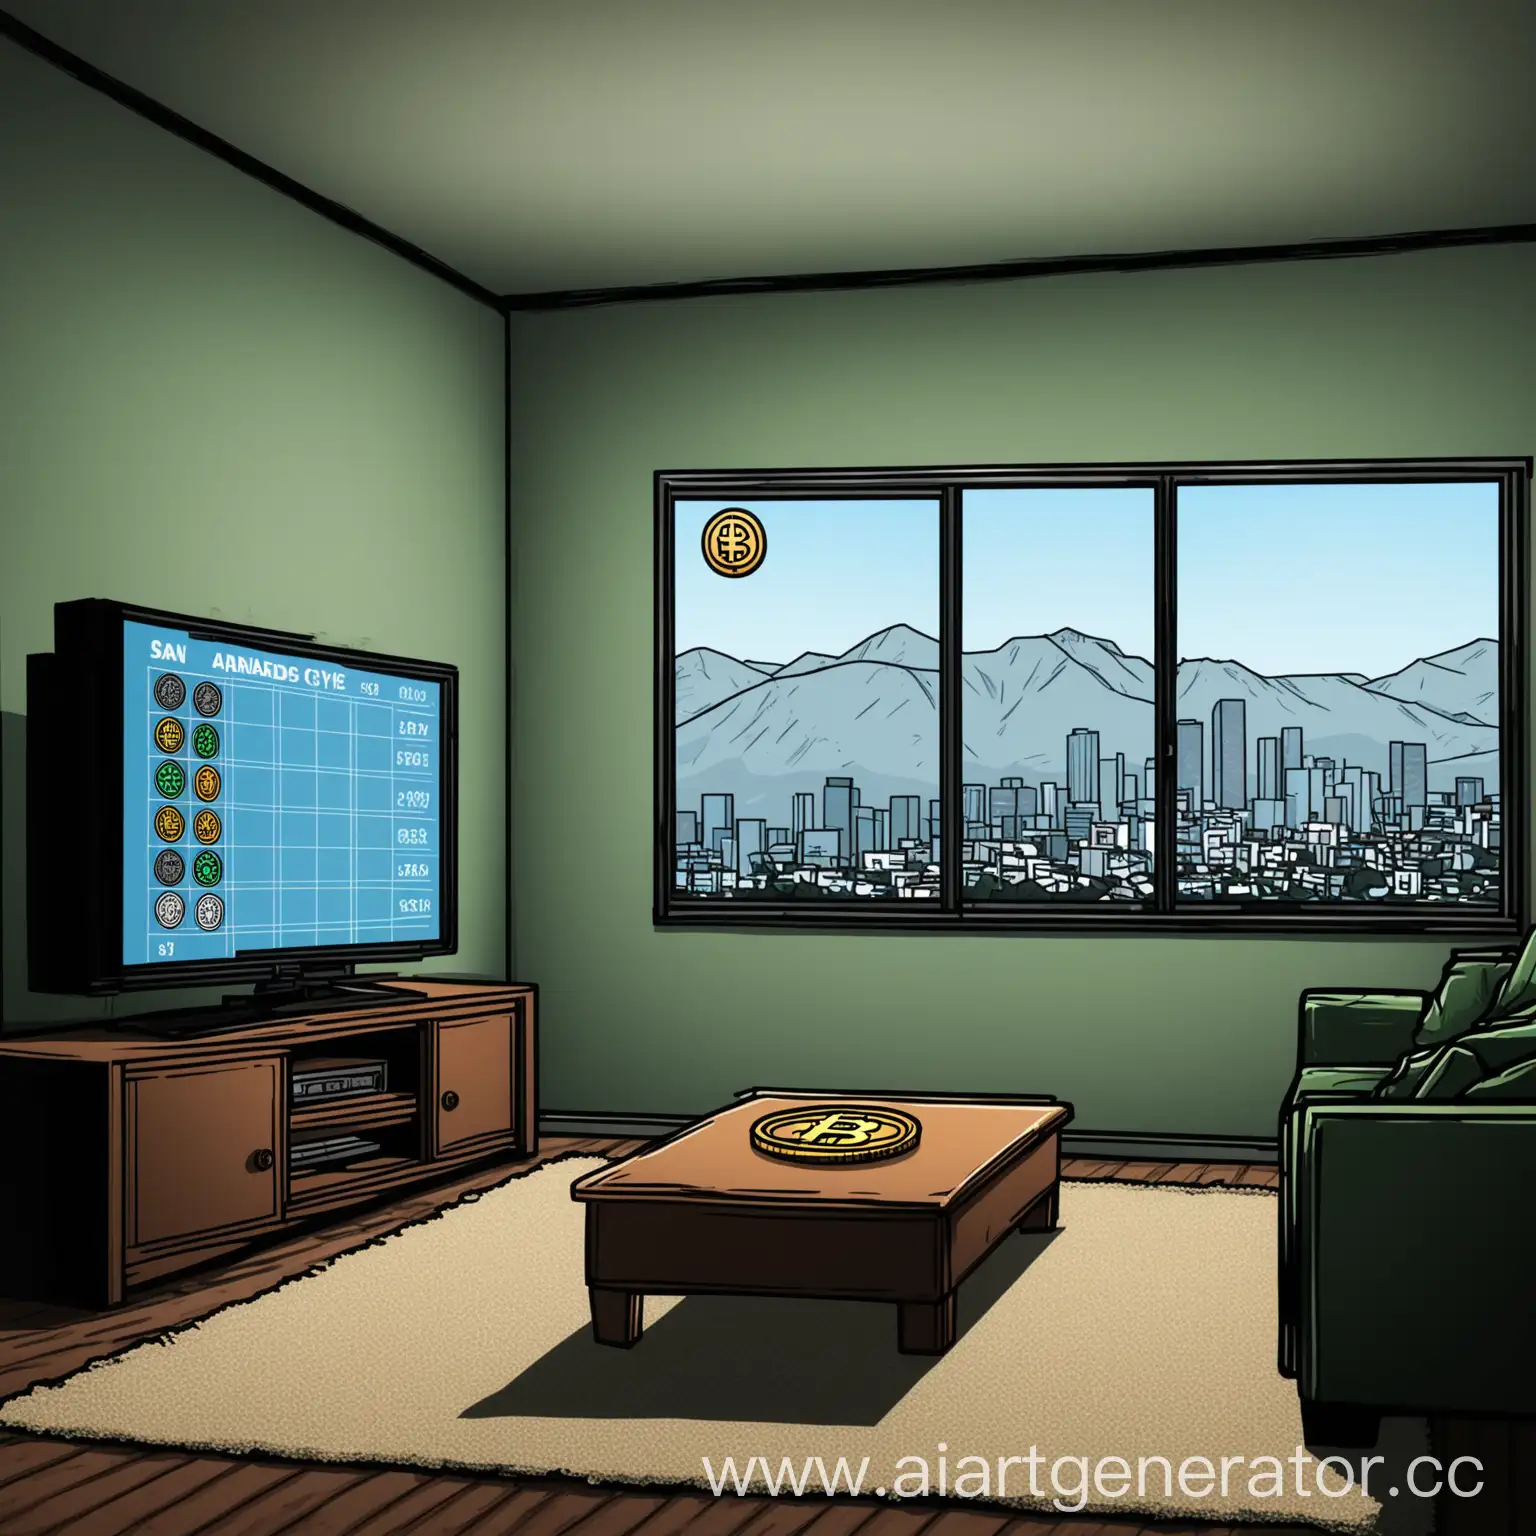 минималистичный простой рисунок квартиры с диваном, большим телевизором по которому показывают график курса криптовалюты, окна с видом на сан андерсен. Стиль гта